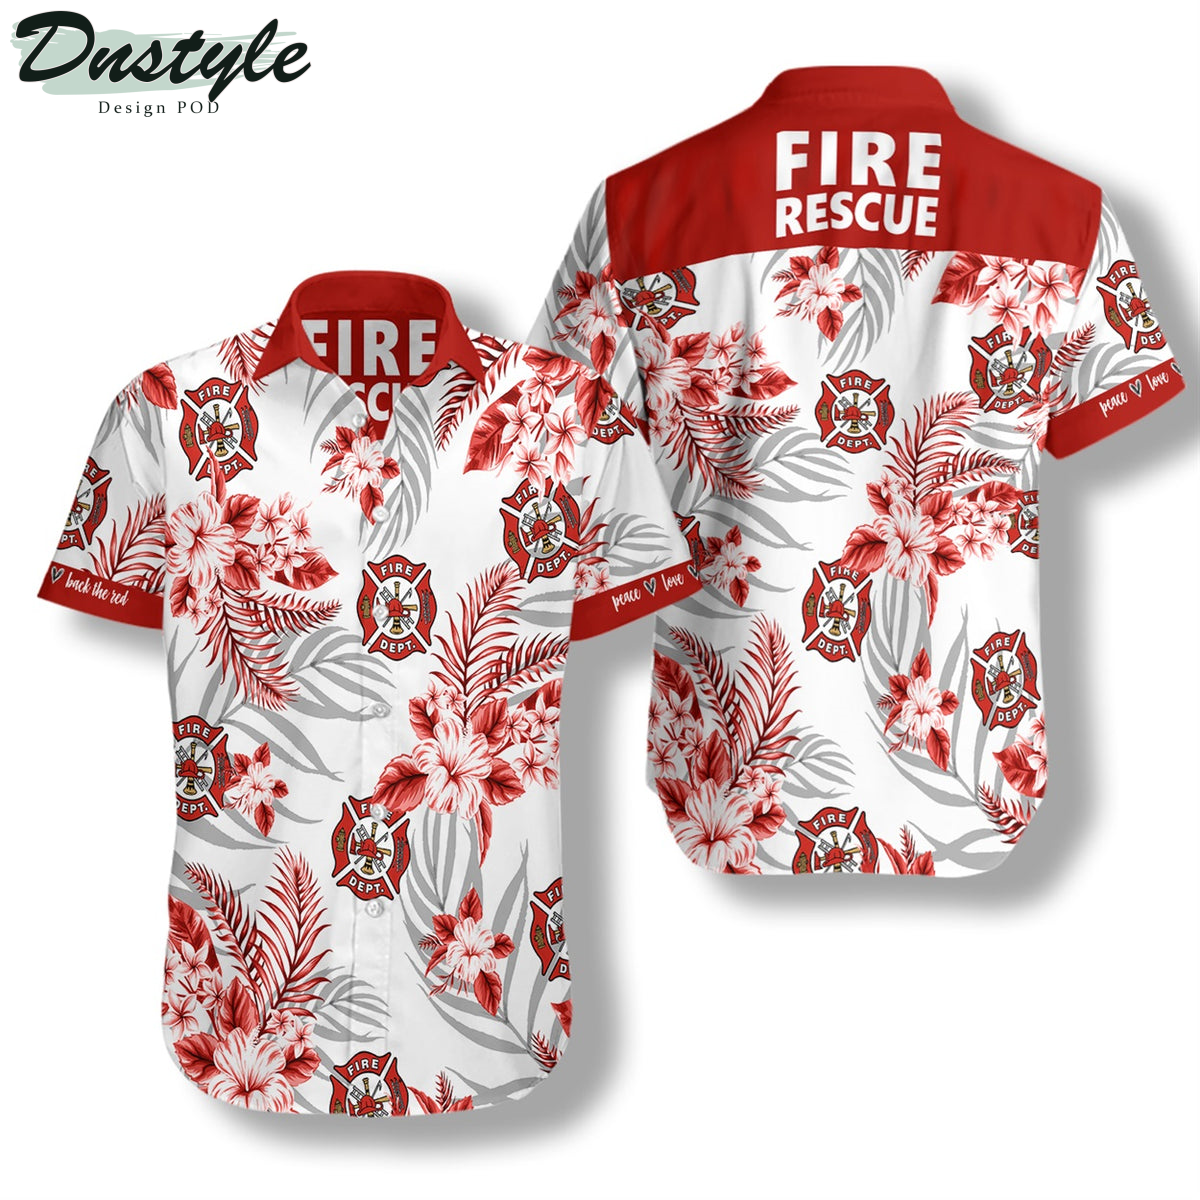 Firefighter Fire Rescue Tropical Hawaiian Shirt